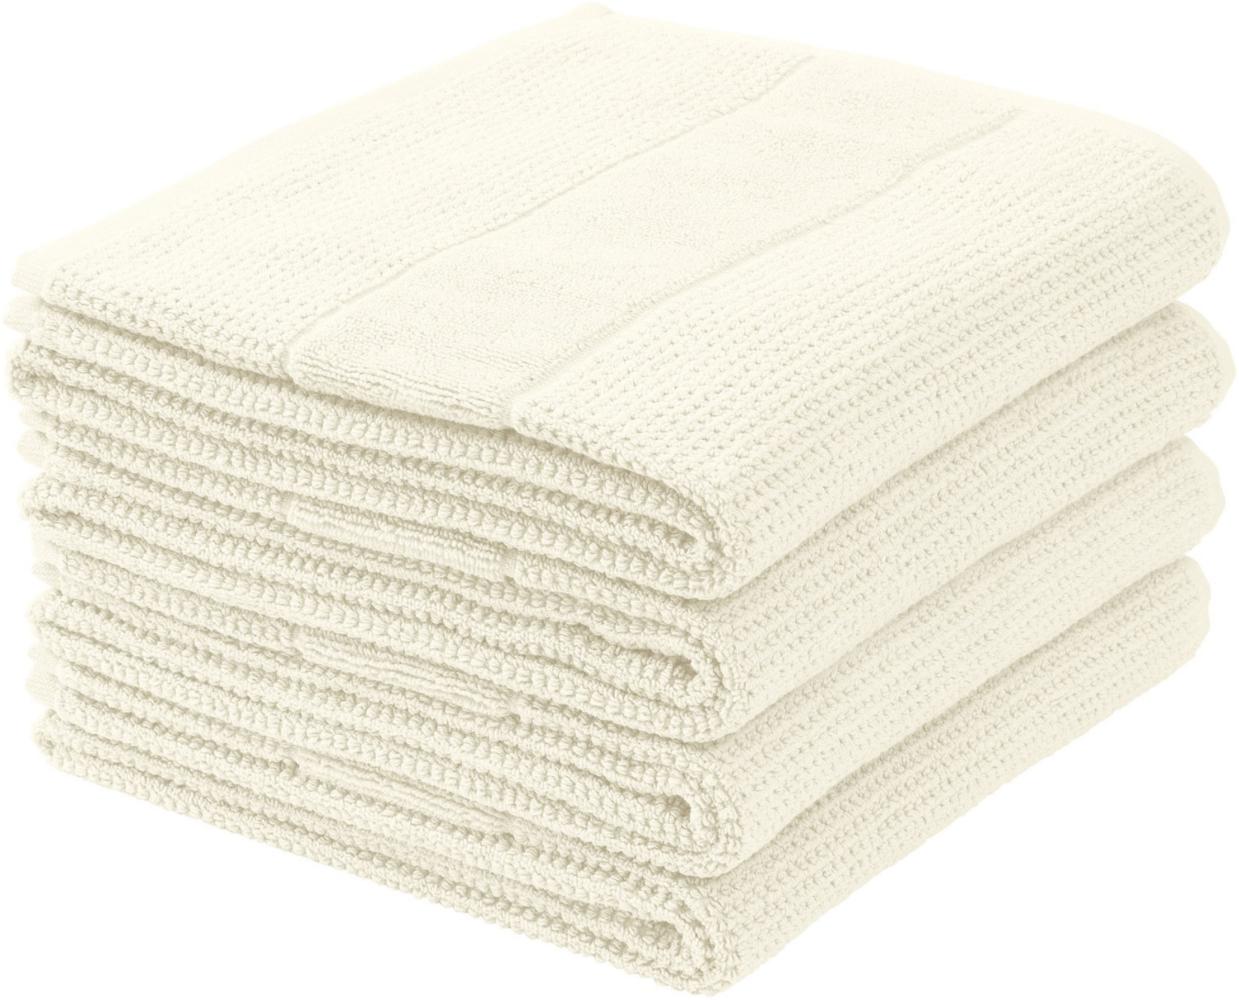 Schiesser Handtücher Turin im 4er Set aus 100% Baumwolle, nachhaltig und fair produziert, Farbe:Offwhite, Größe:50 cm x 100 cm Bild 1